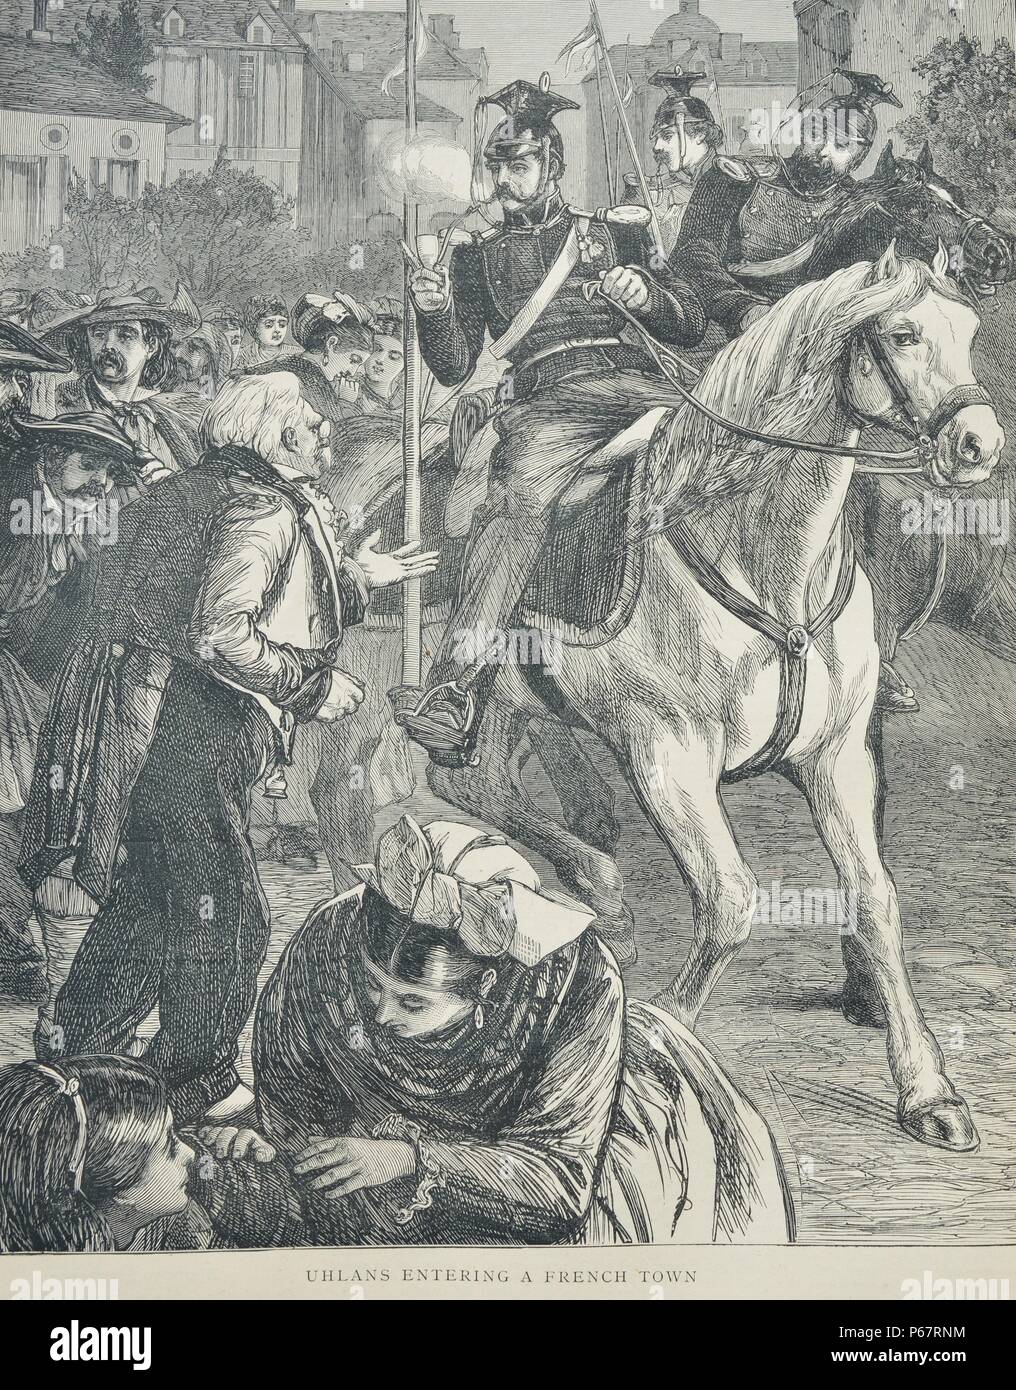 Gravur zeigt die Ankunft der Ulanen in eine französische Stadt. Ulanen waren polnische leichte Kavallerie bewaffnet mit Lanzen, Schwerter und Pistolen. Der Titel wurde später von Lancer Regimenter in der Russischen, preußischen und österreichischen Armeen verwendet. Vom 1870 Stockfoto